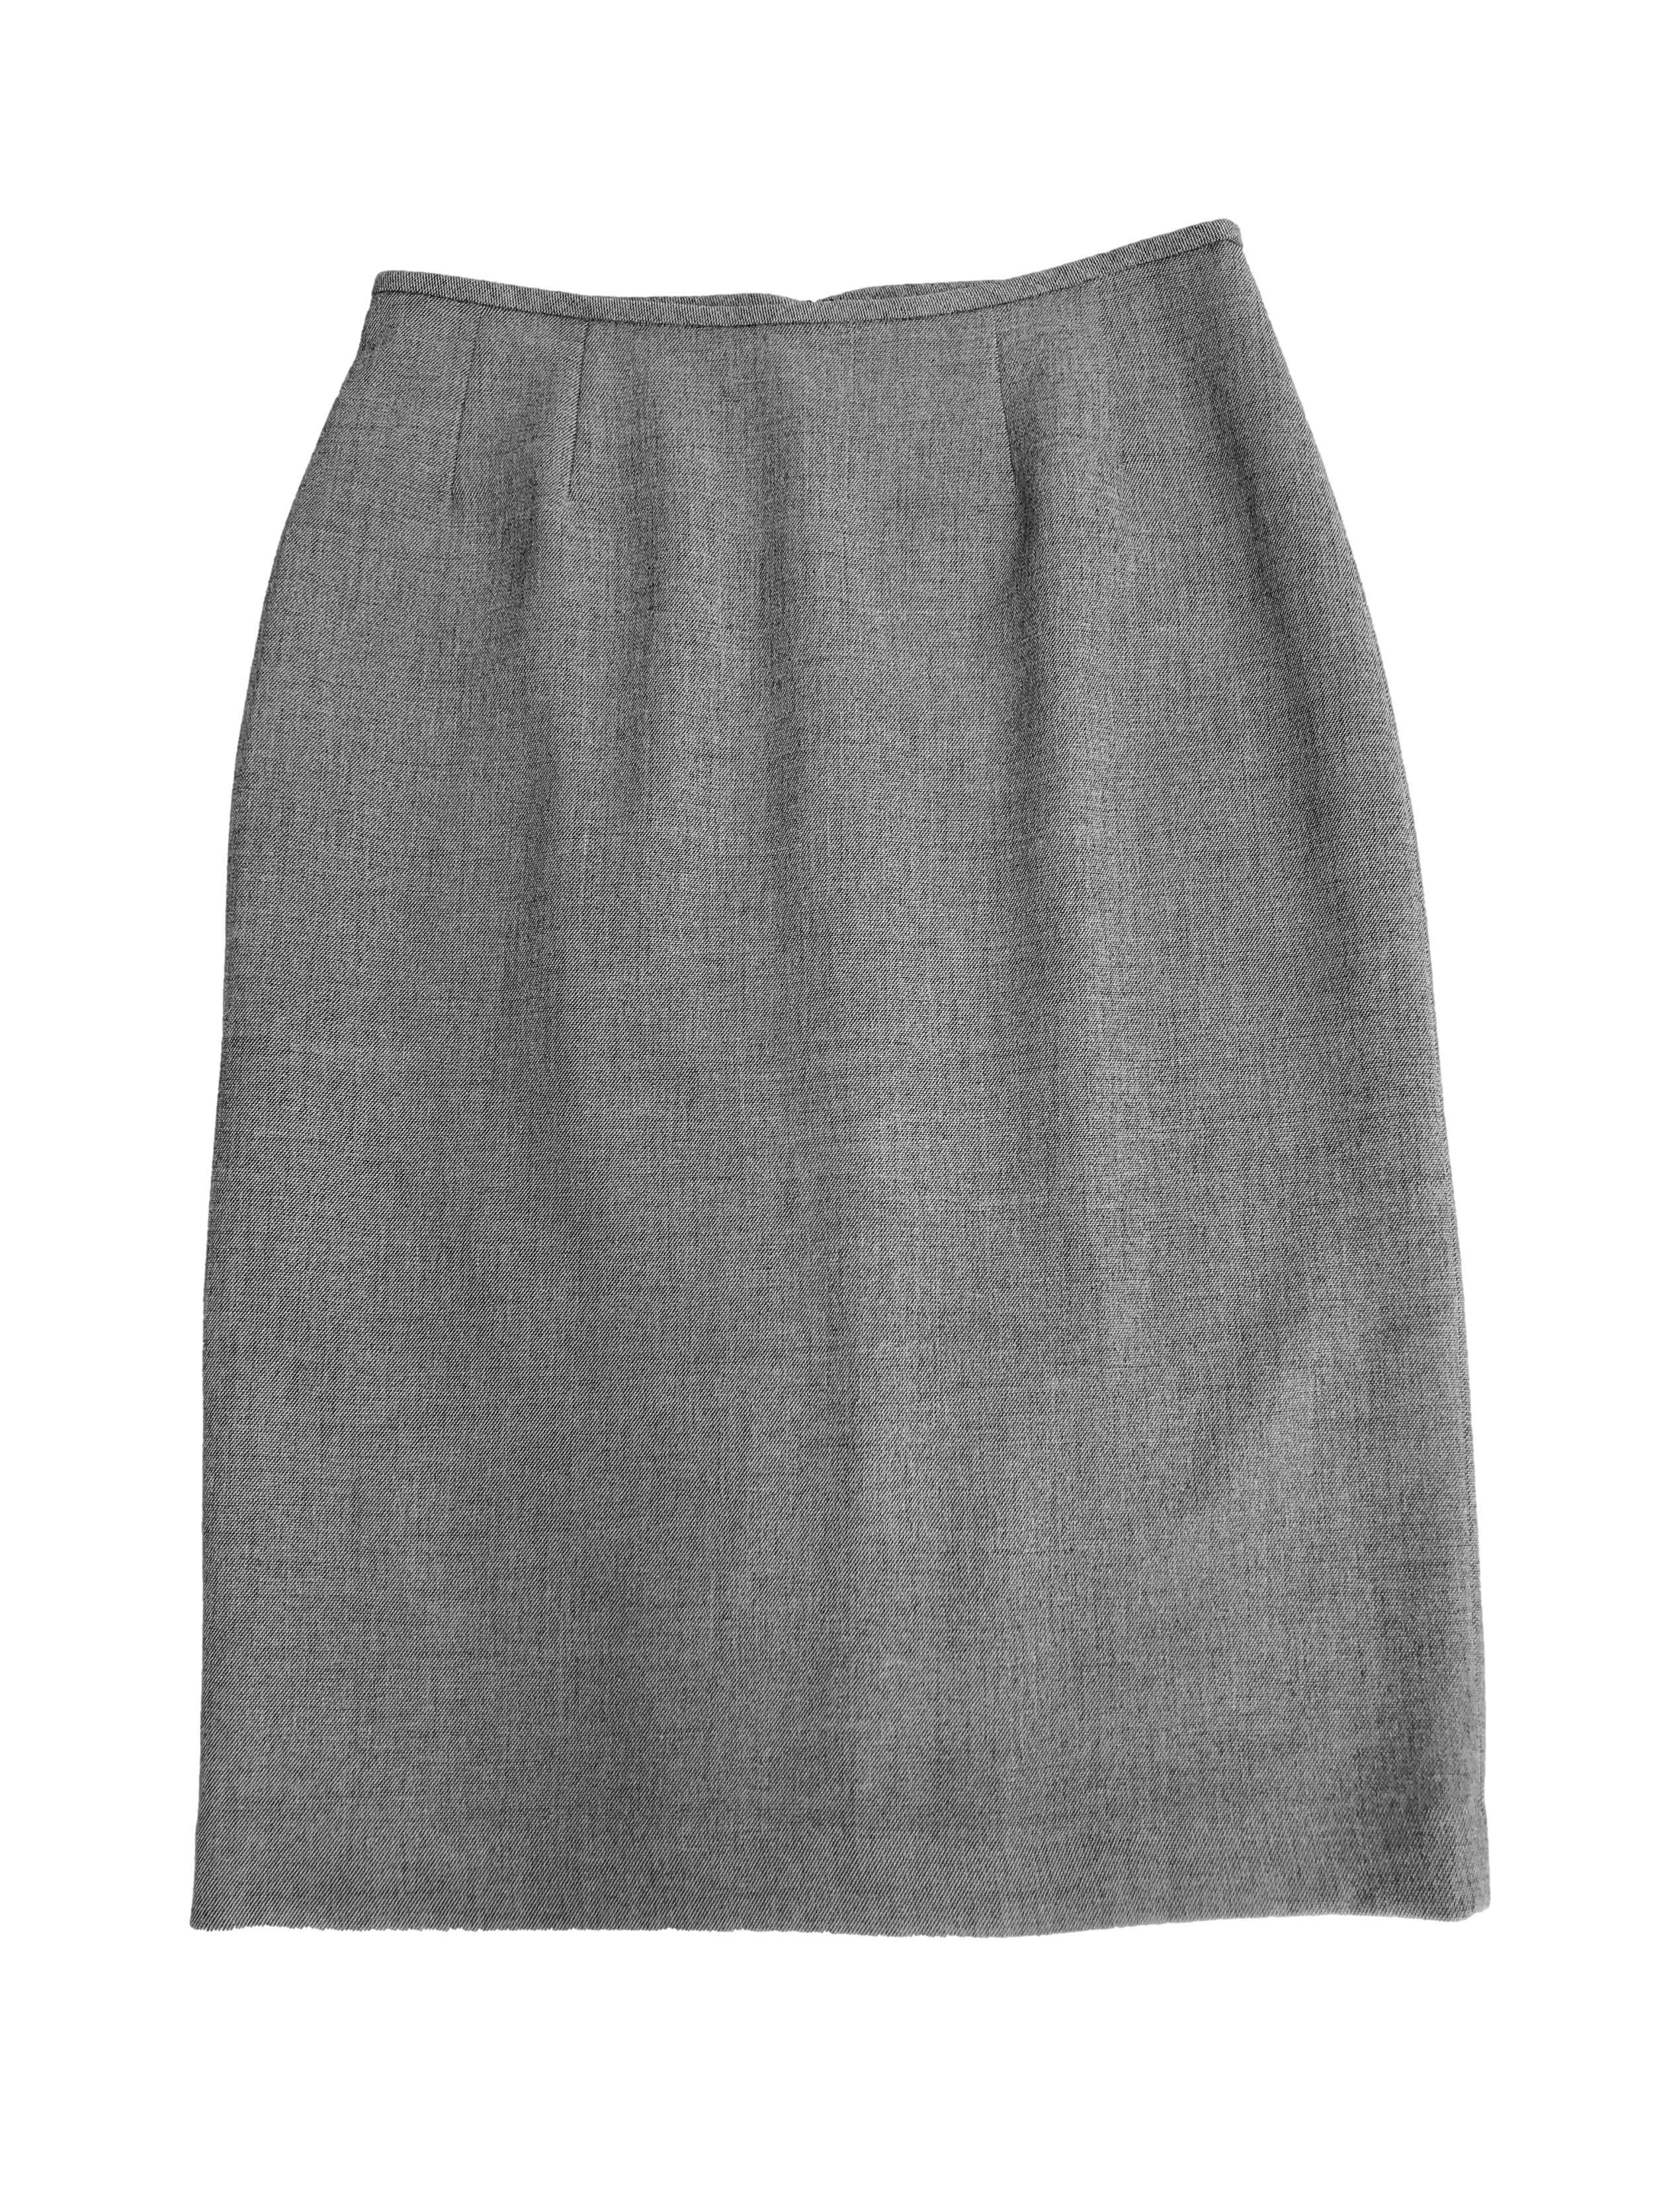 Falda Kasper gris de tela tipo sastre stretch, forrada, con cierre posterior y abertura en la basta. Cintura 76cm Largo 66cm. Excelentes acabados